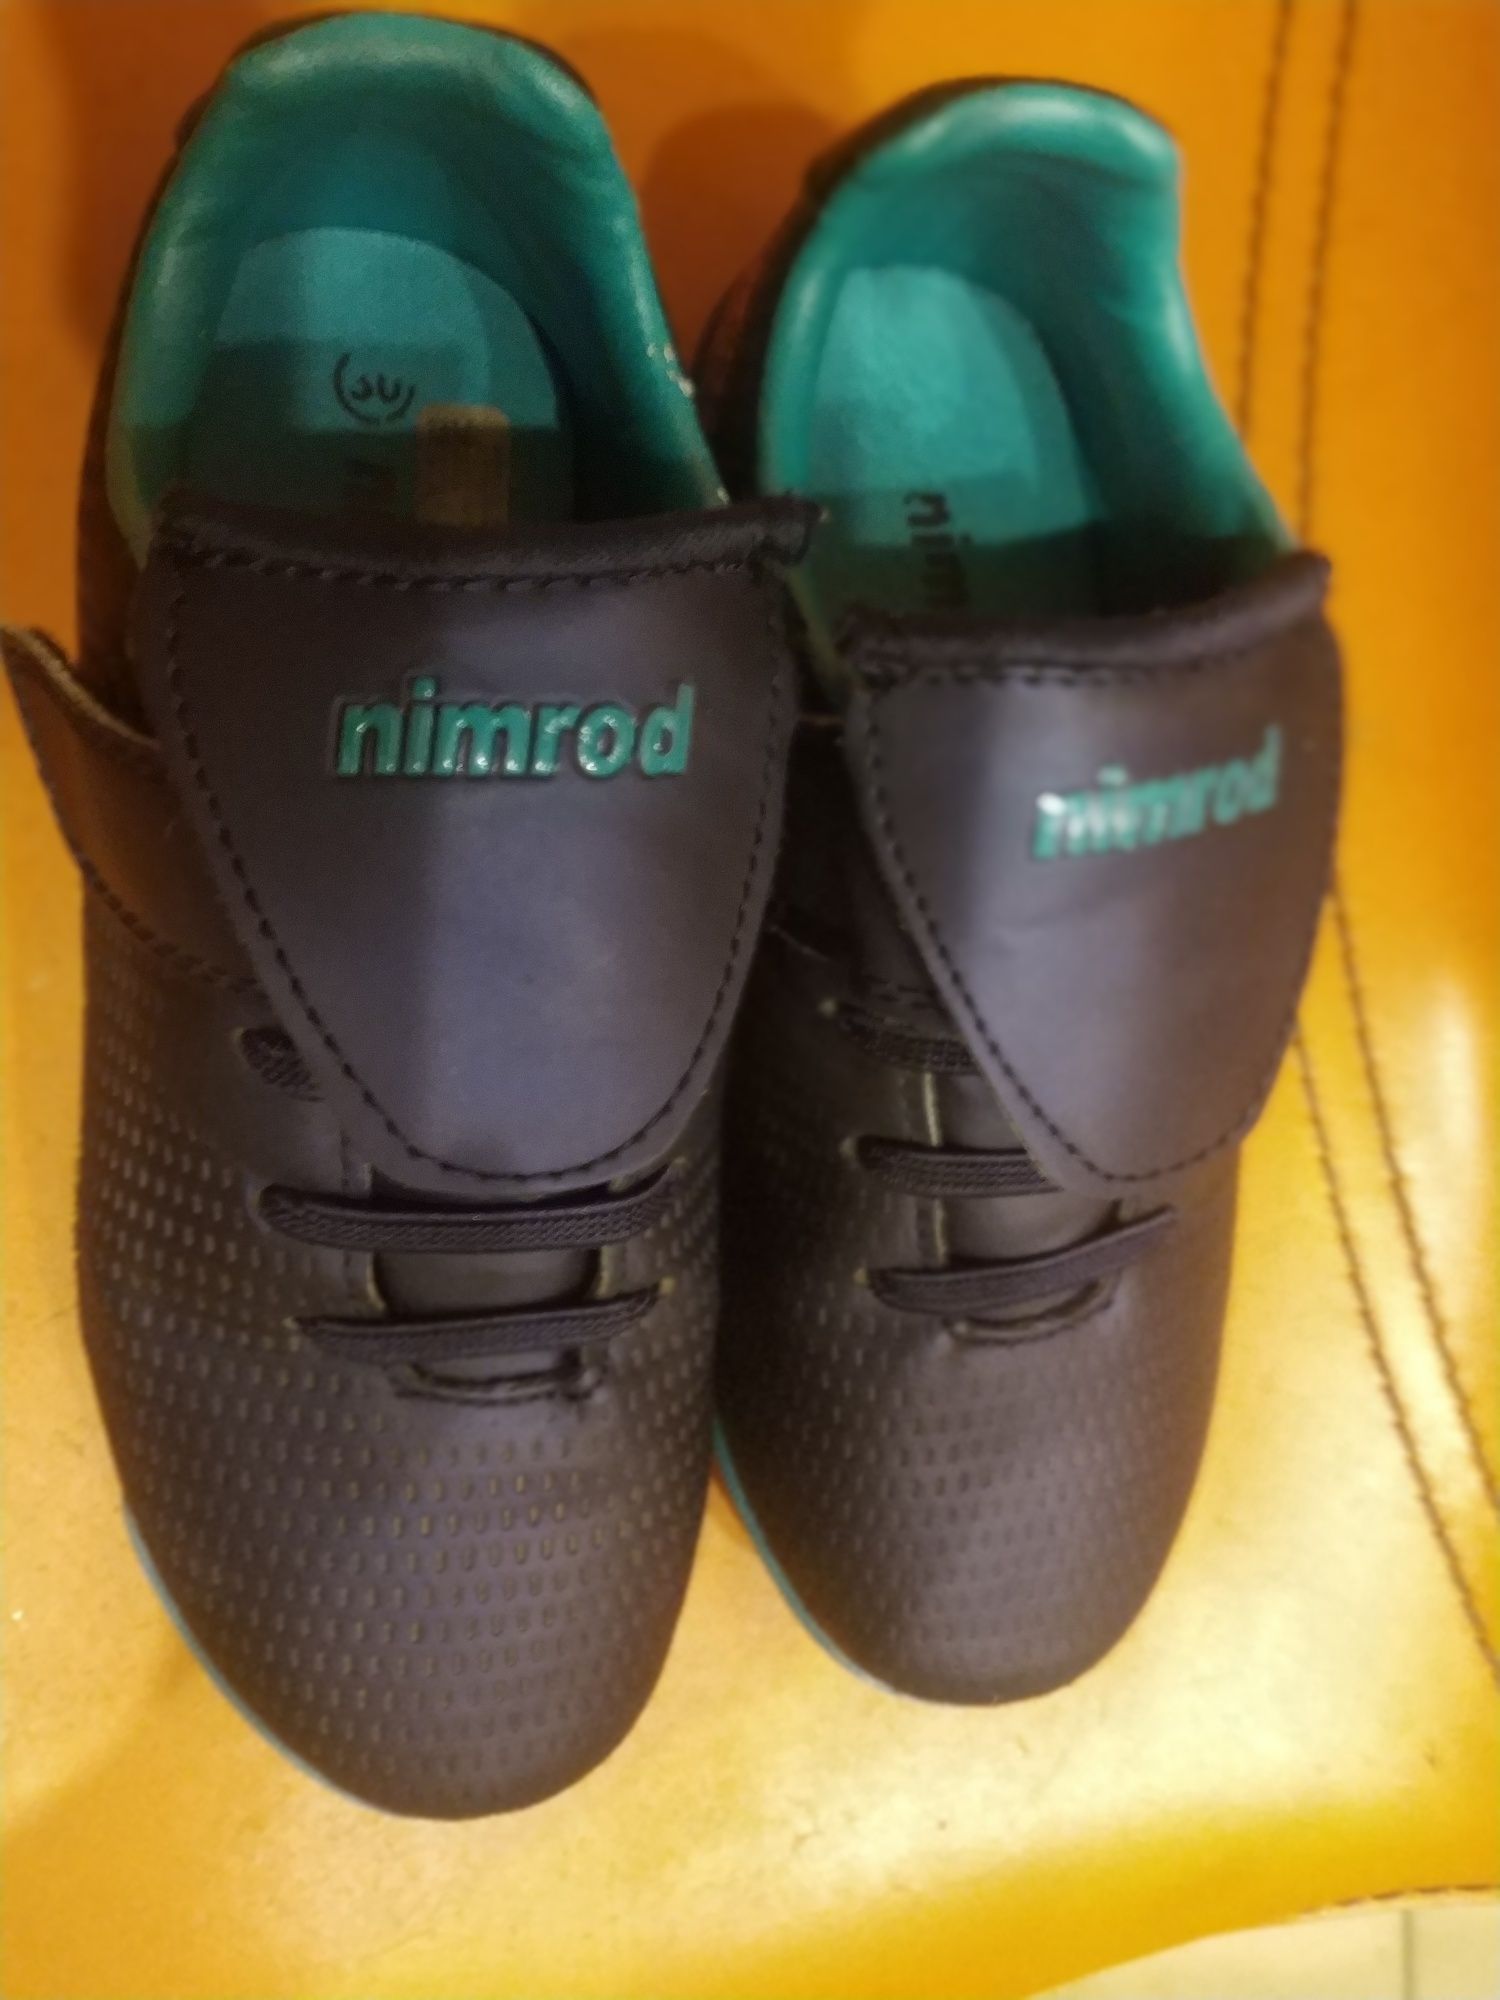 Лёгкие кроссовки израильской фирмы Namrod на мальчика 30 размер